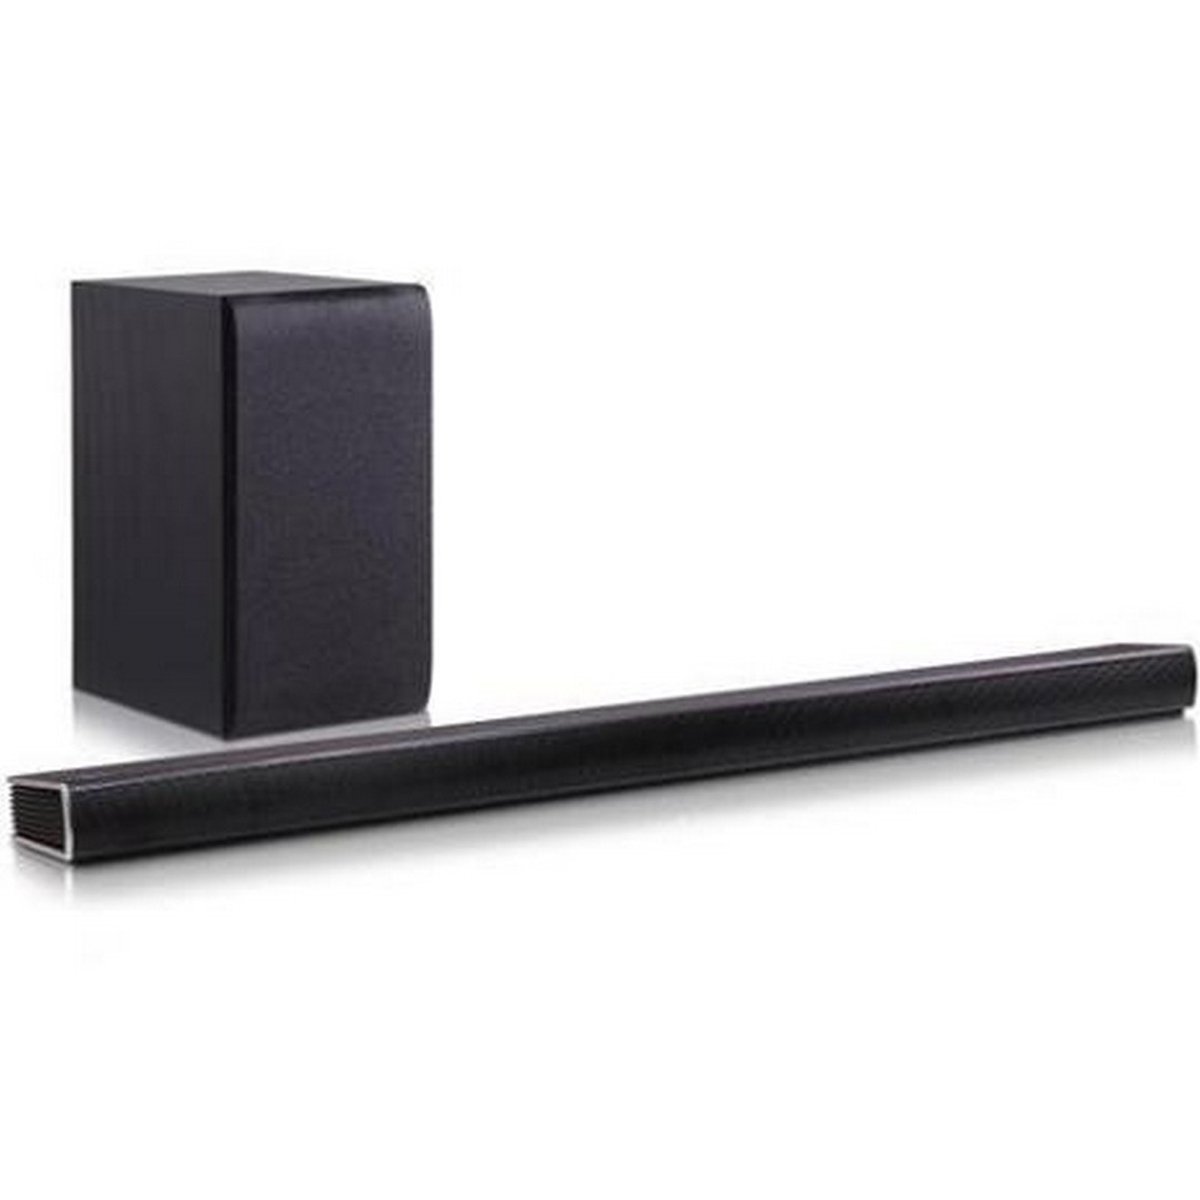 LG 2.1 Sound Bar SH5B 320W Black